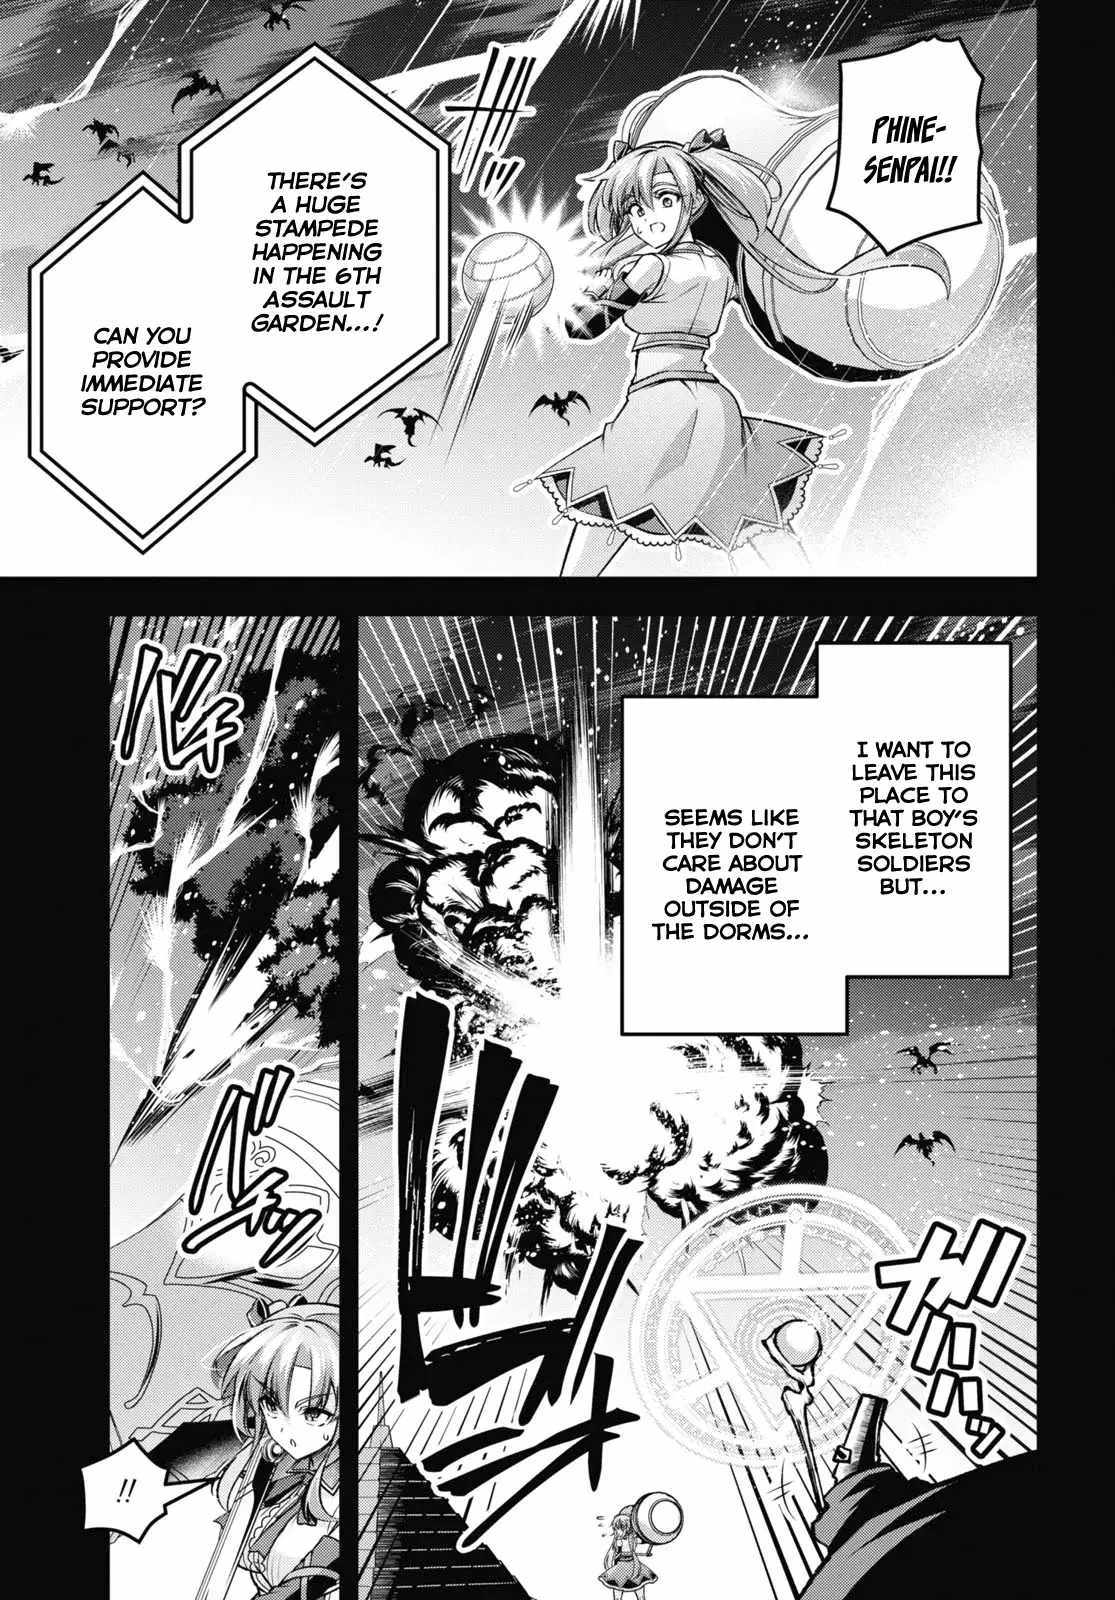 Demon's Sword Master Of Excalibur School - 37 page 6-4248ec1e